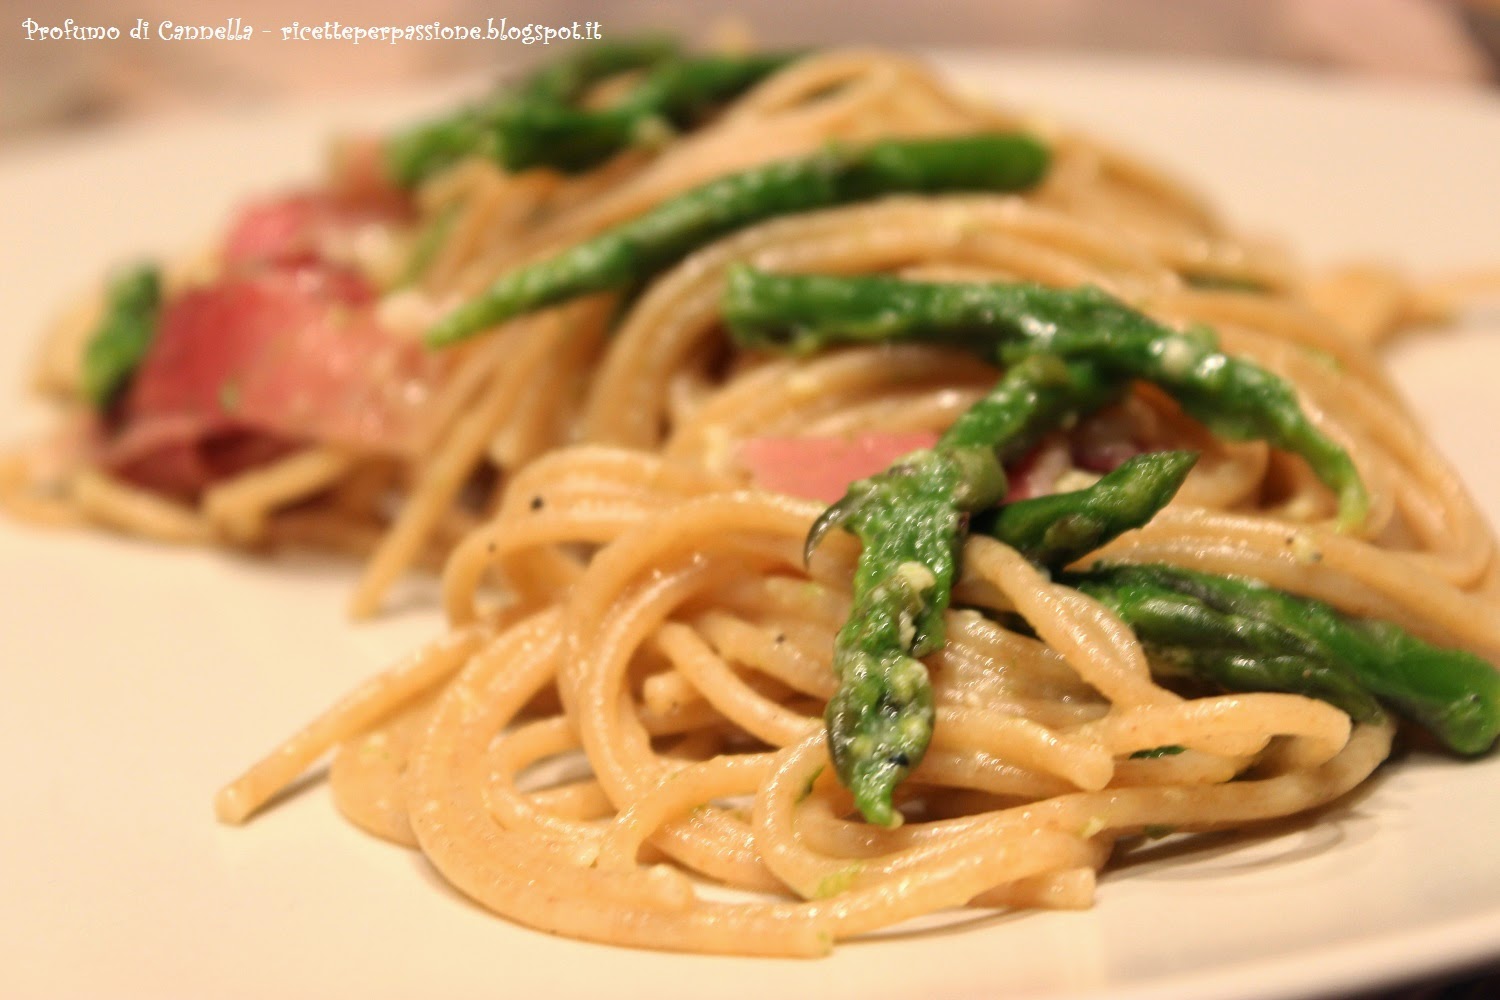 spaghetti alla carbonara di asparagi - pasta integrale e speck per un gusto deciso